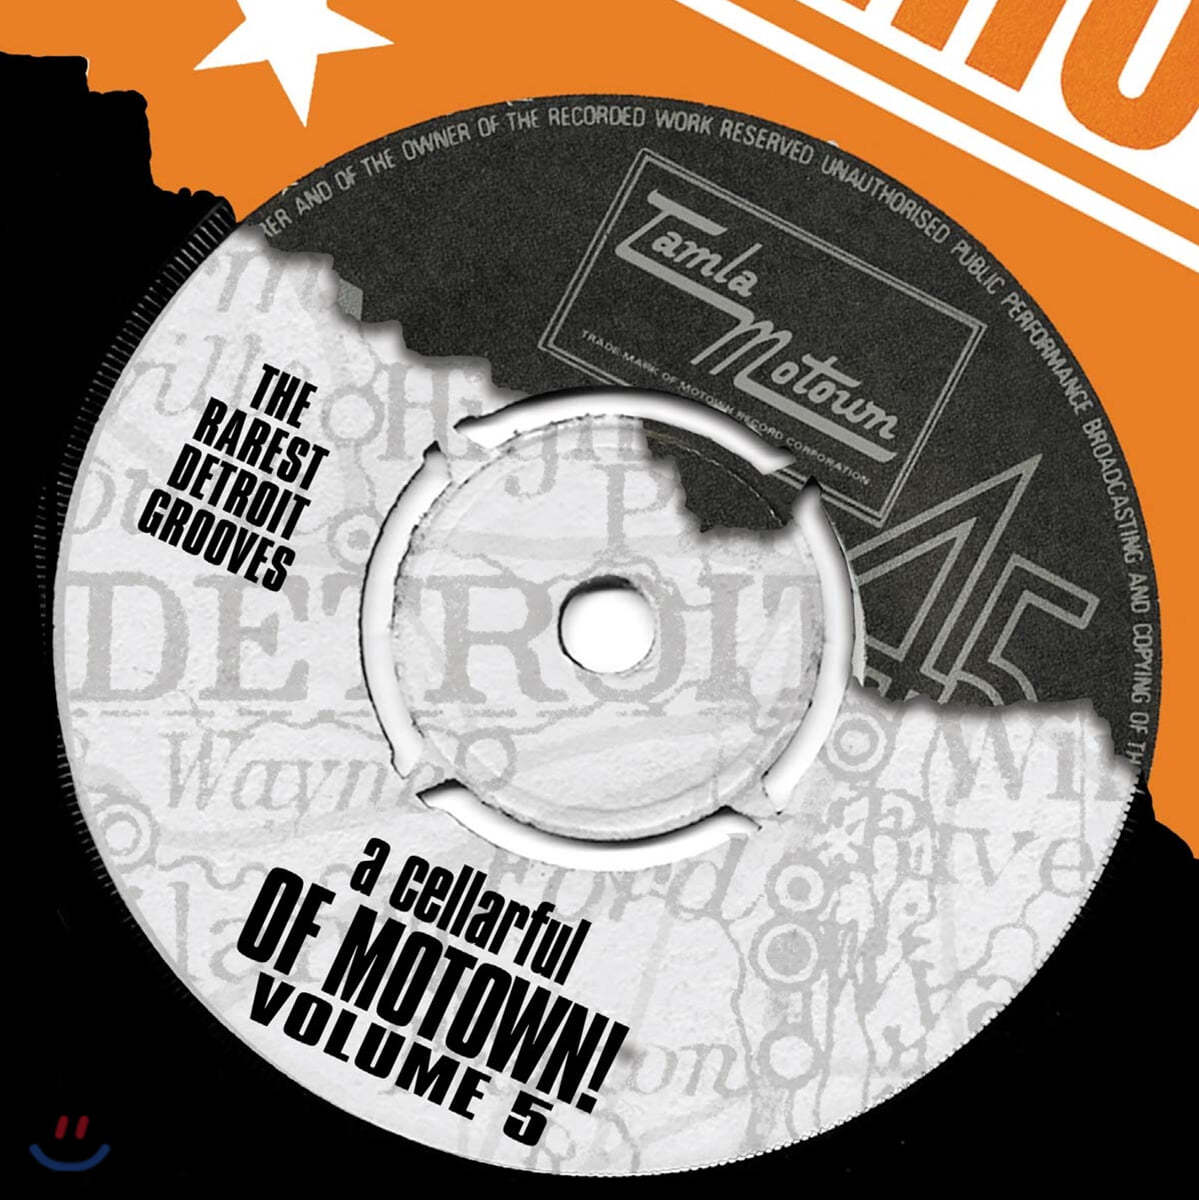 모타운 레코드 희귀 음원 모음집 (A Cellarful Of Motown Vol.5)